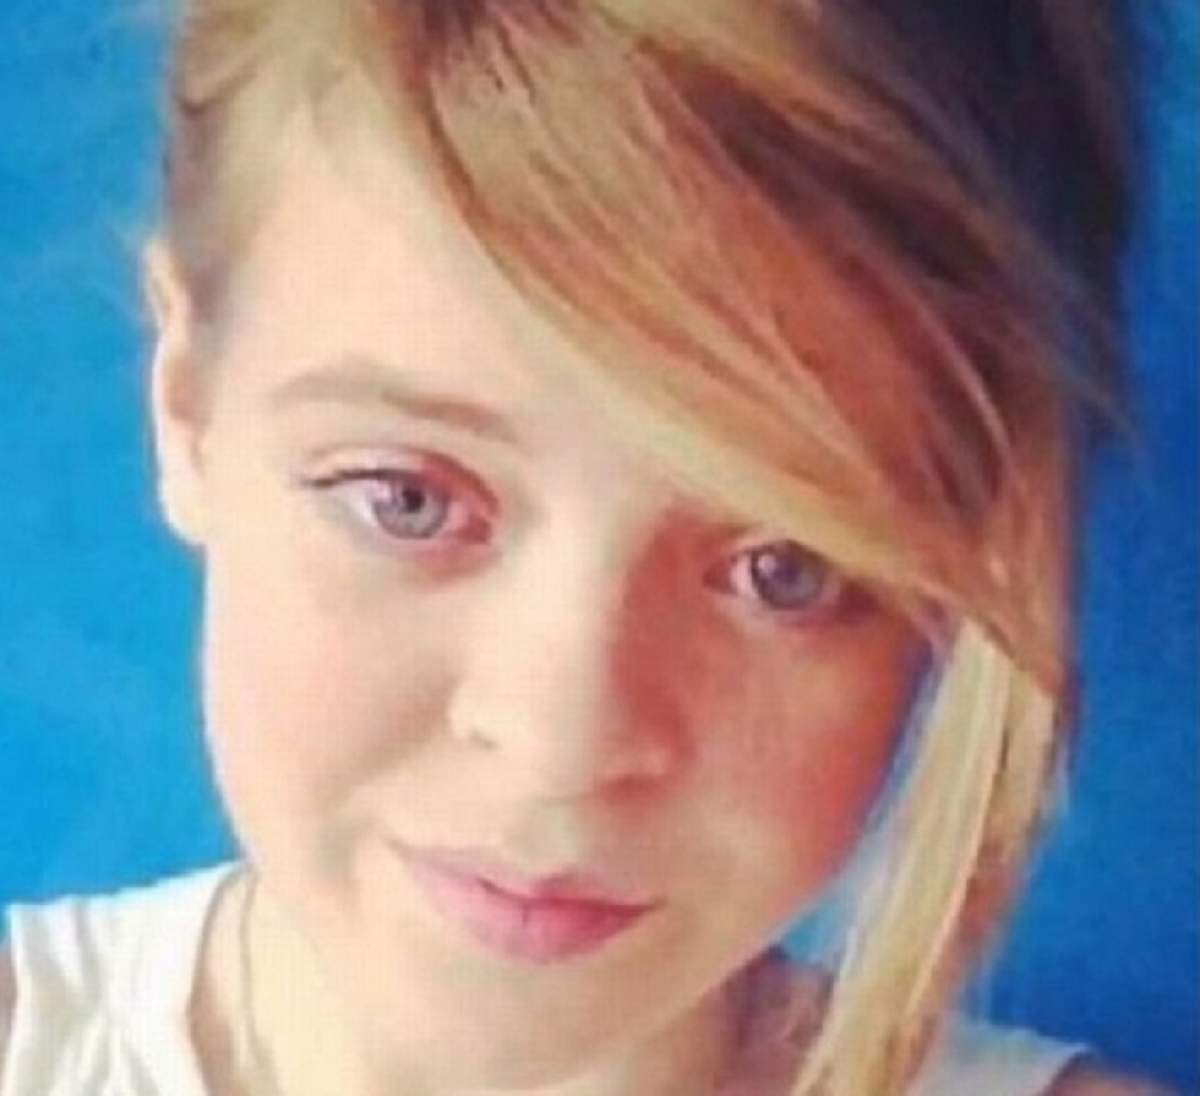 EMOŢIONANT: O fată de 15 ani a murit cu zâmbetul pe buze, după ce familia i-a îndeplinit o ultimă dorinţă...